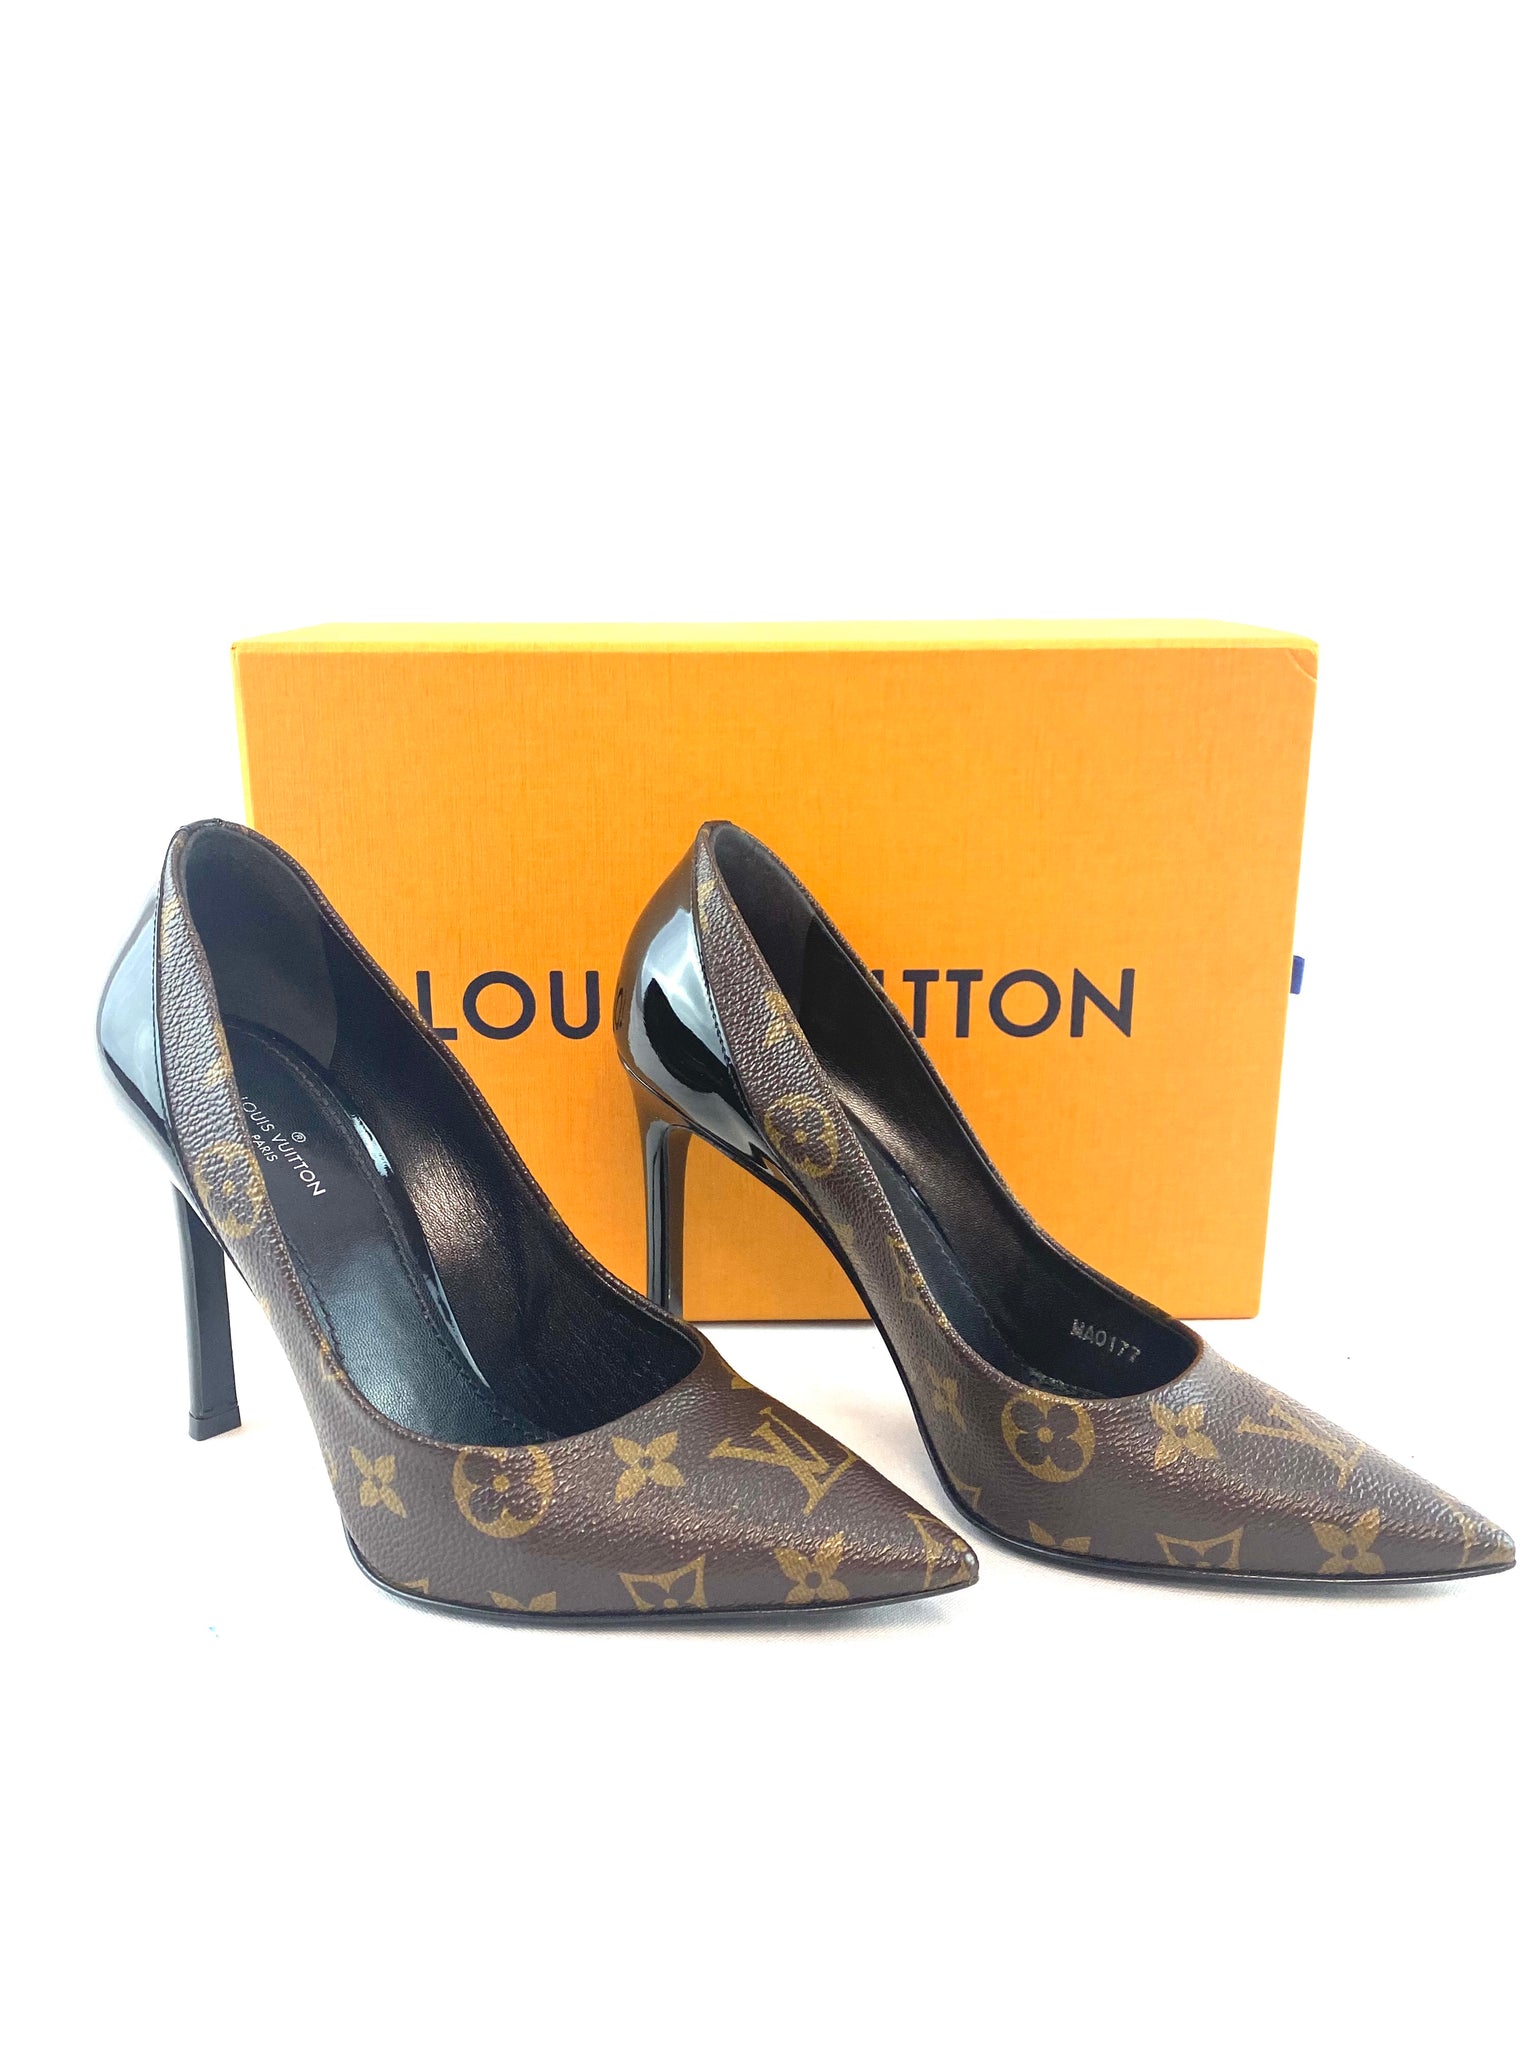 Louis Vuitton High Heel Pumps